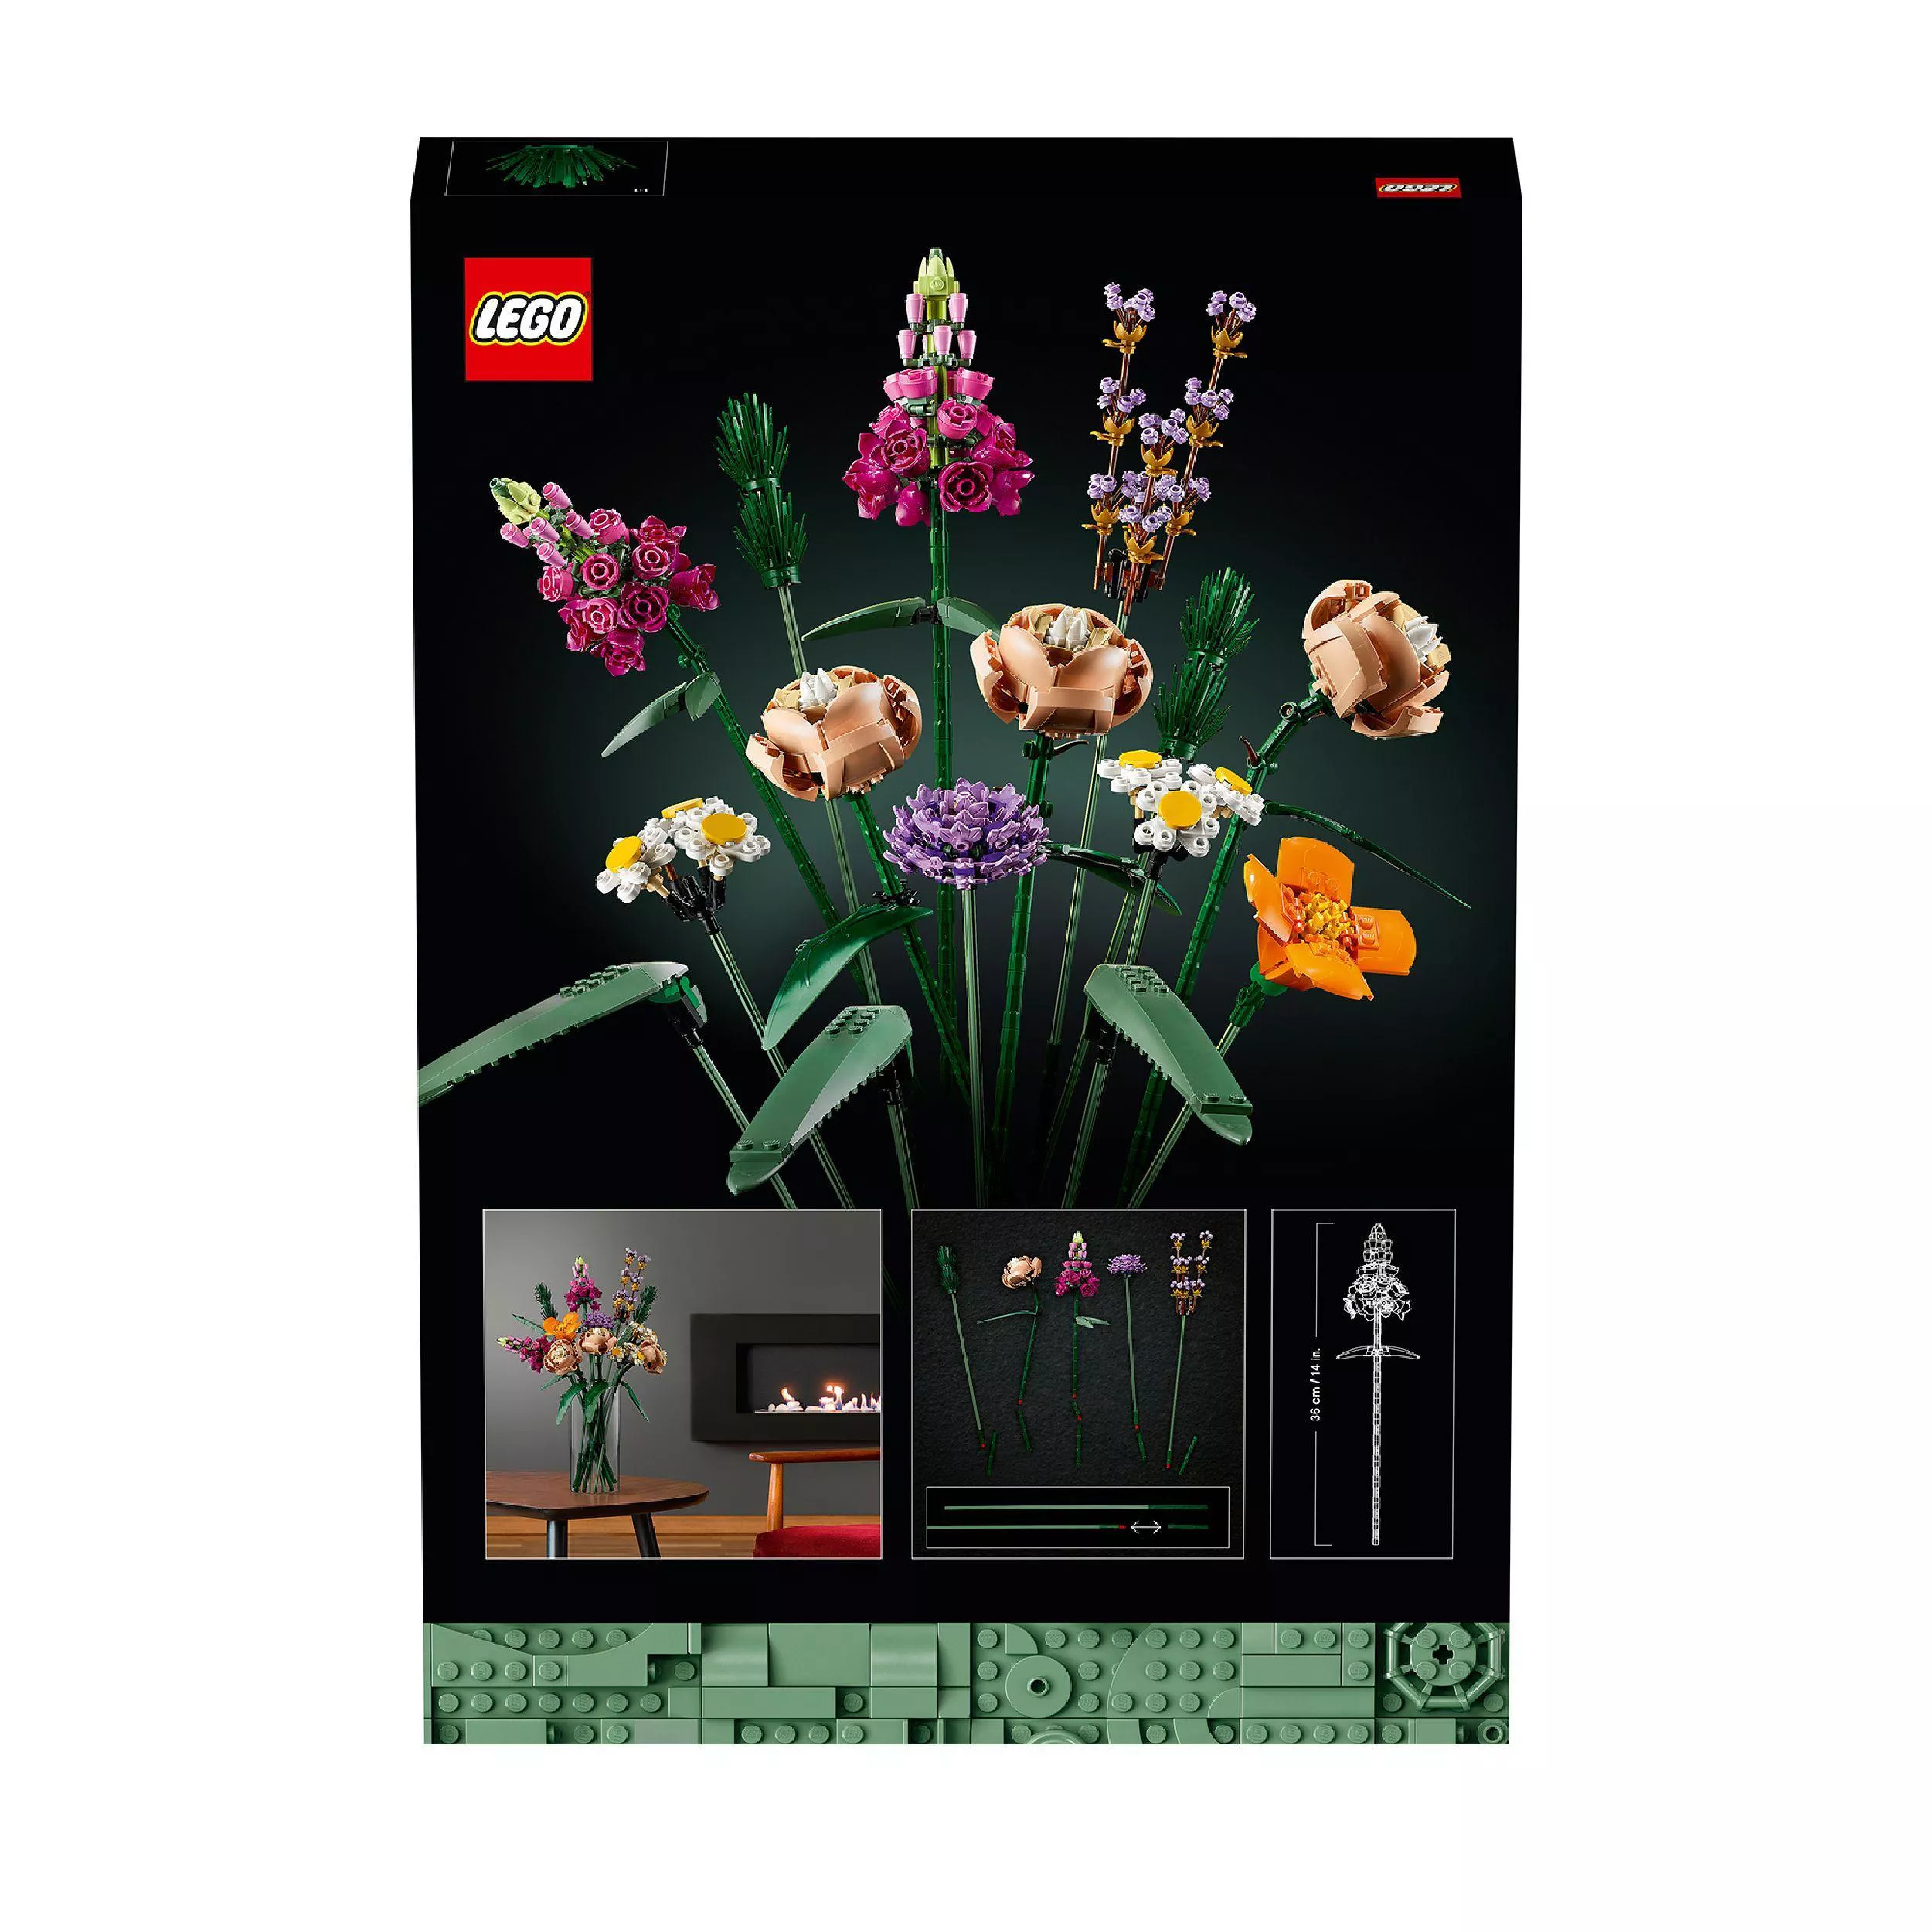 LEGO 10280 Creator Expert Blumenstrauß